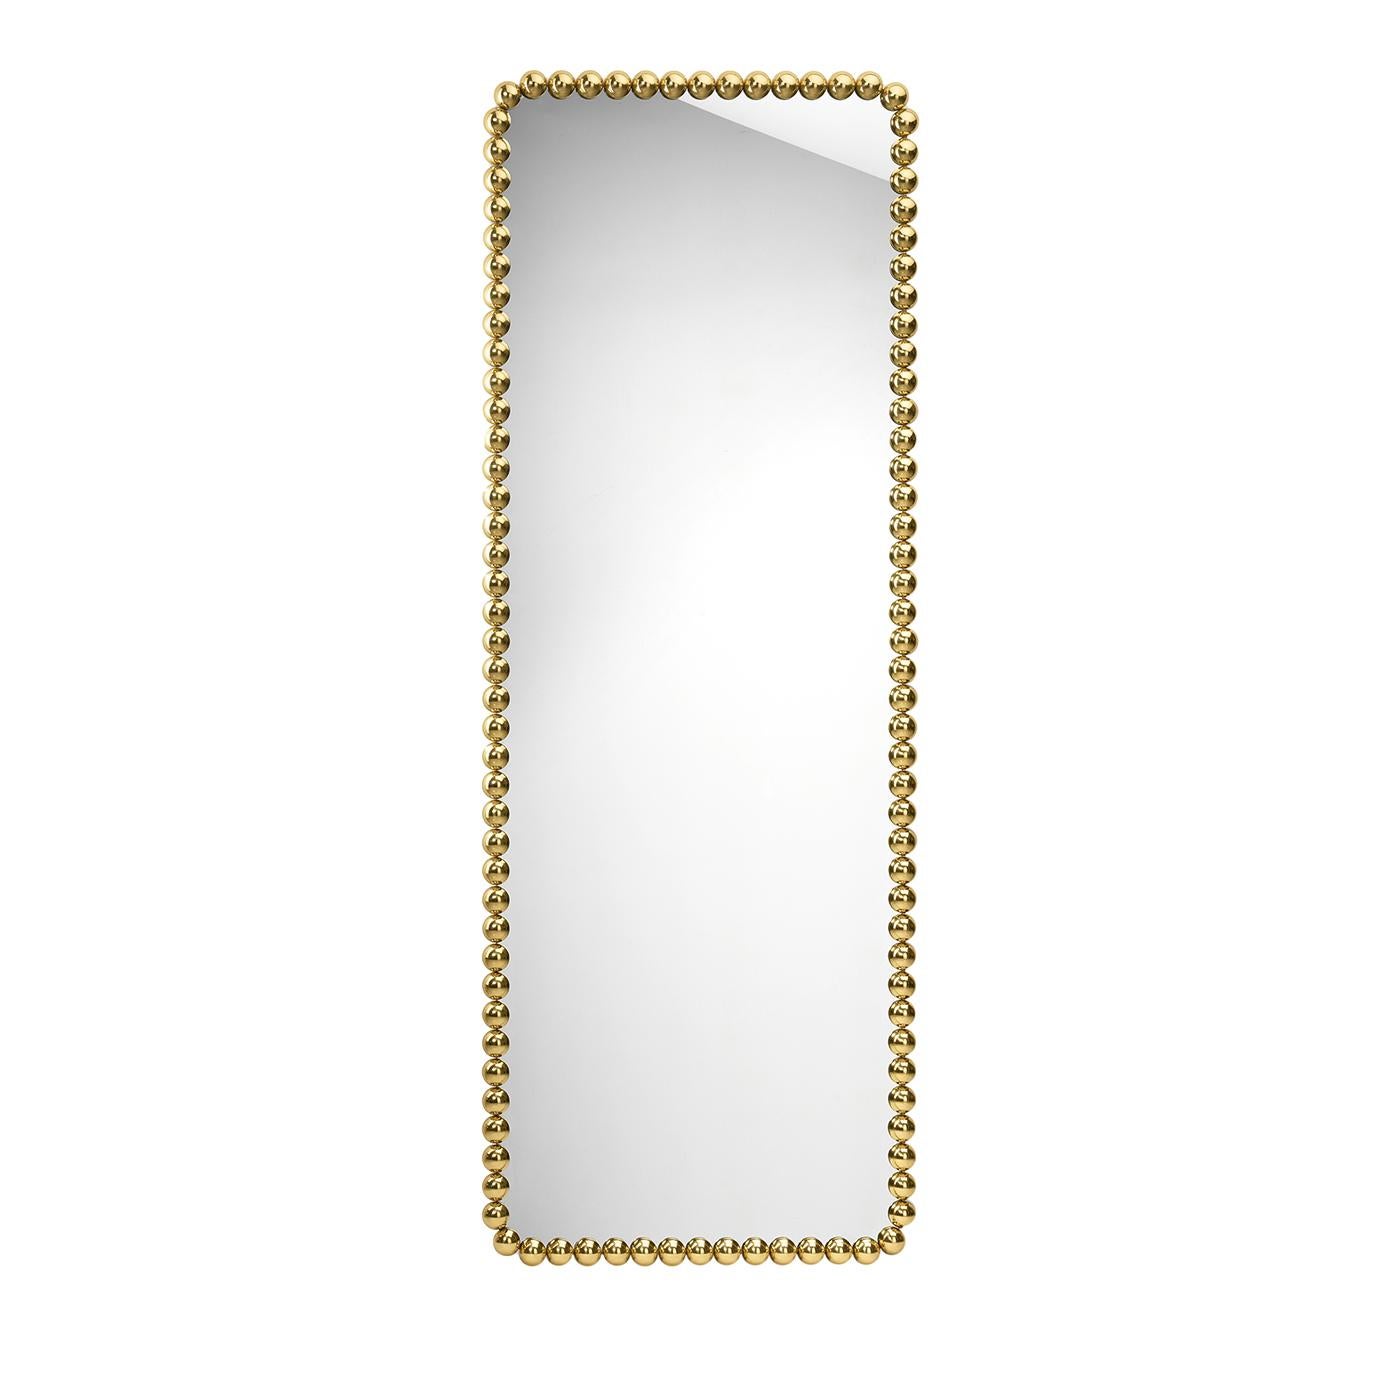 Dieser freistehende Spiegel ist ein Schmuckstück für eine kahle Wand. Er hat einen bezaubernden Messingrahmen mit goldfarbenen Perlen, die an kostbare Halsketten erinnern. Sie ist eine wunderbare Ergänzung für moderne Dekors, in denen man Glamour